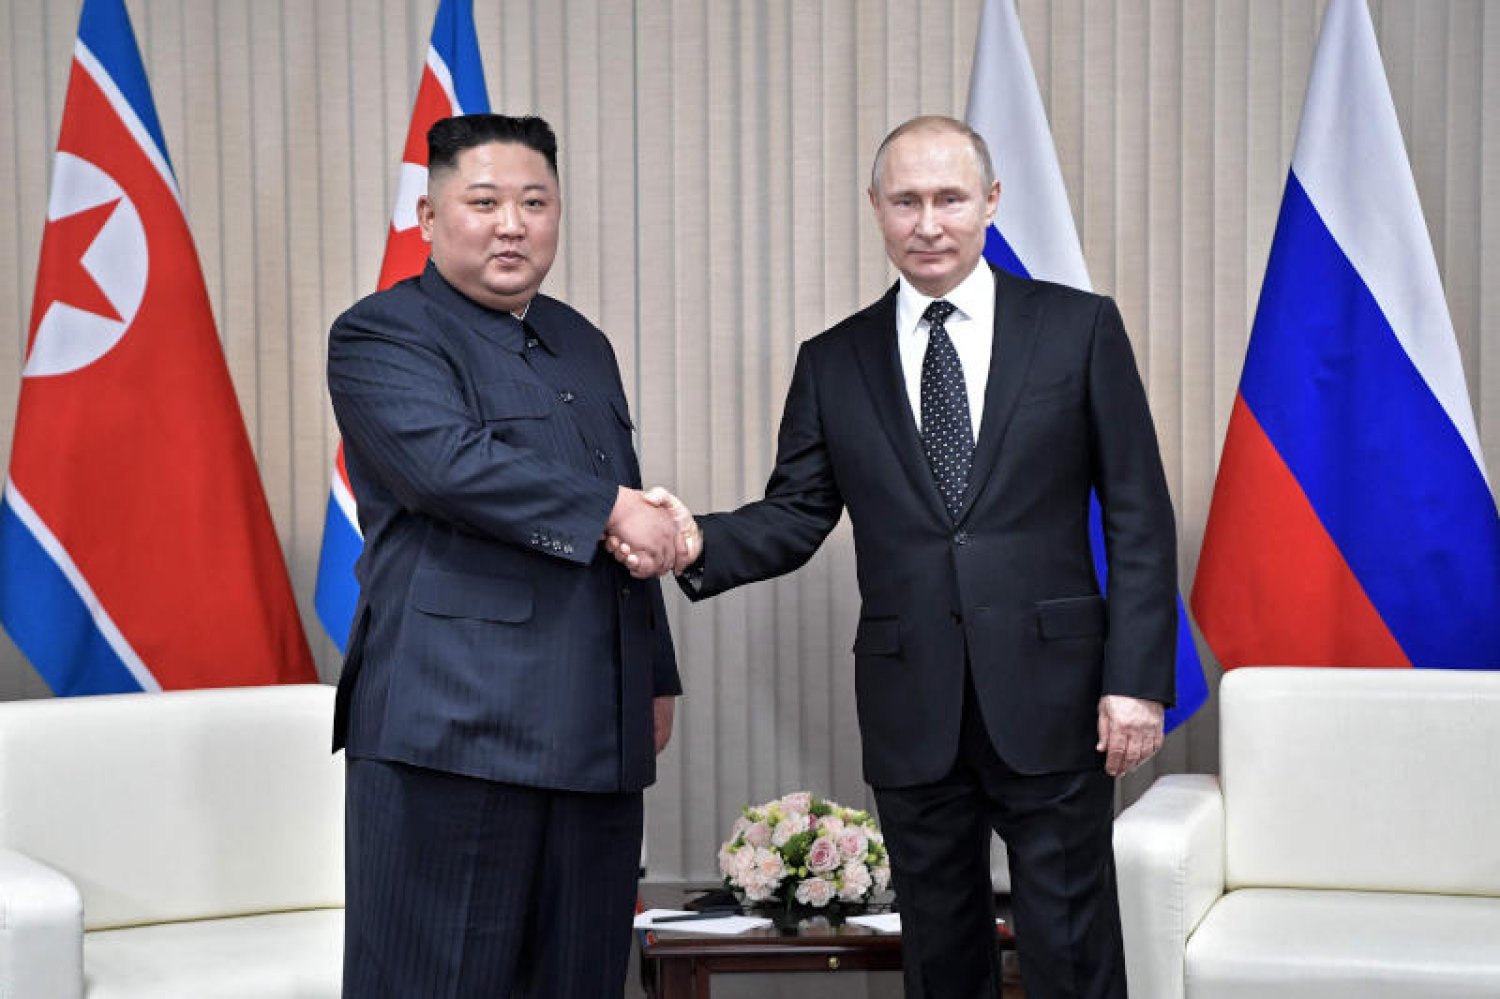 بوتين يجتمع مع زعيم كوريا الشمالية في روسيا هذا الشهر